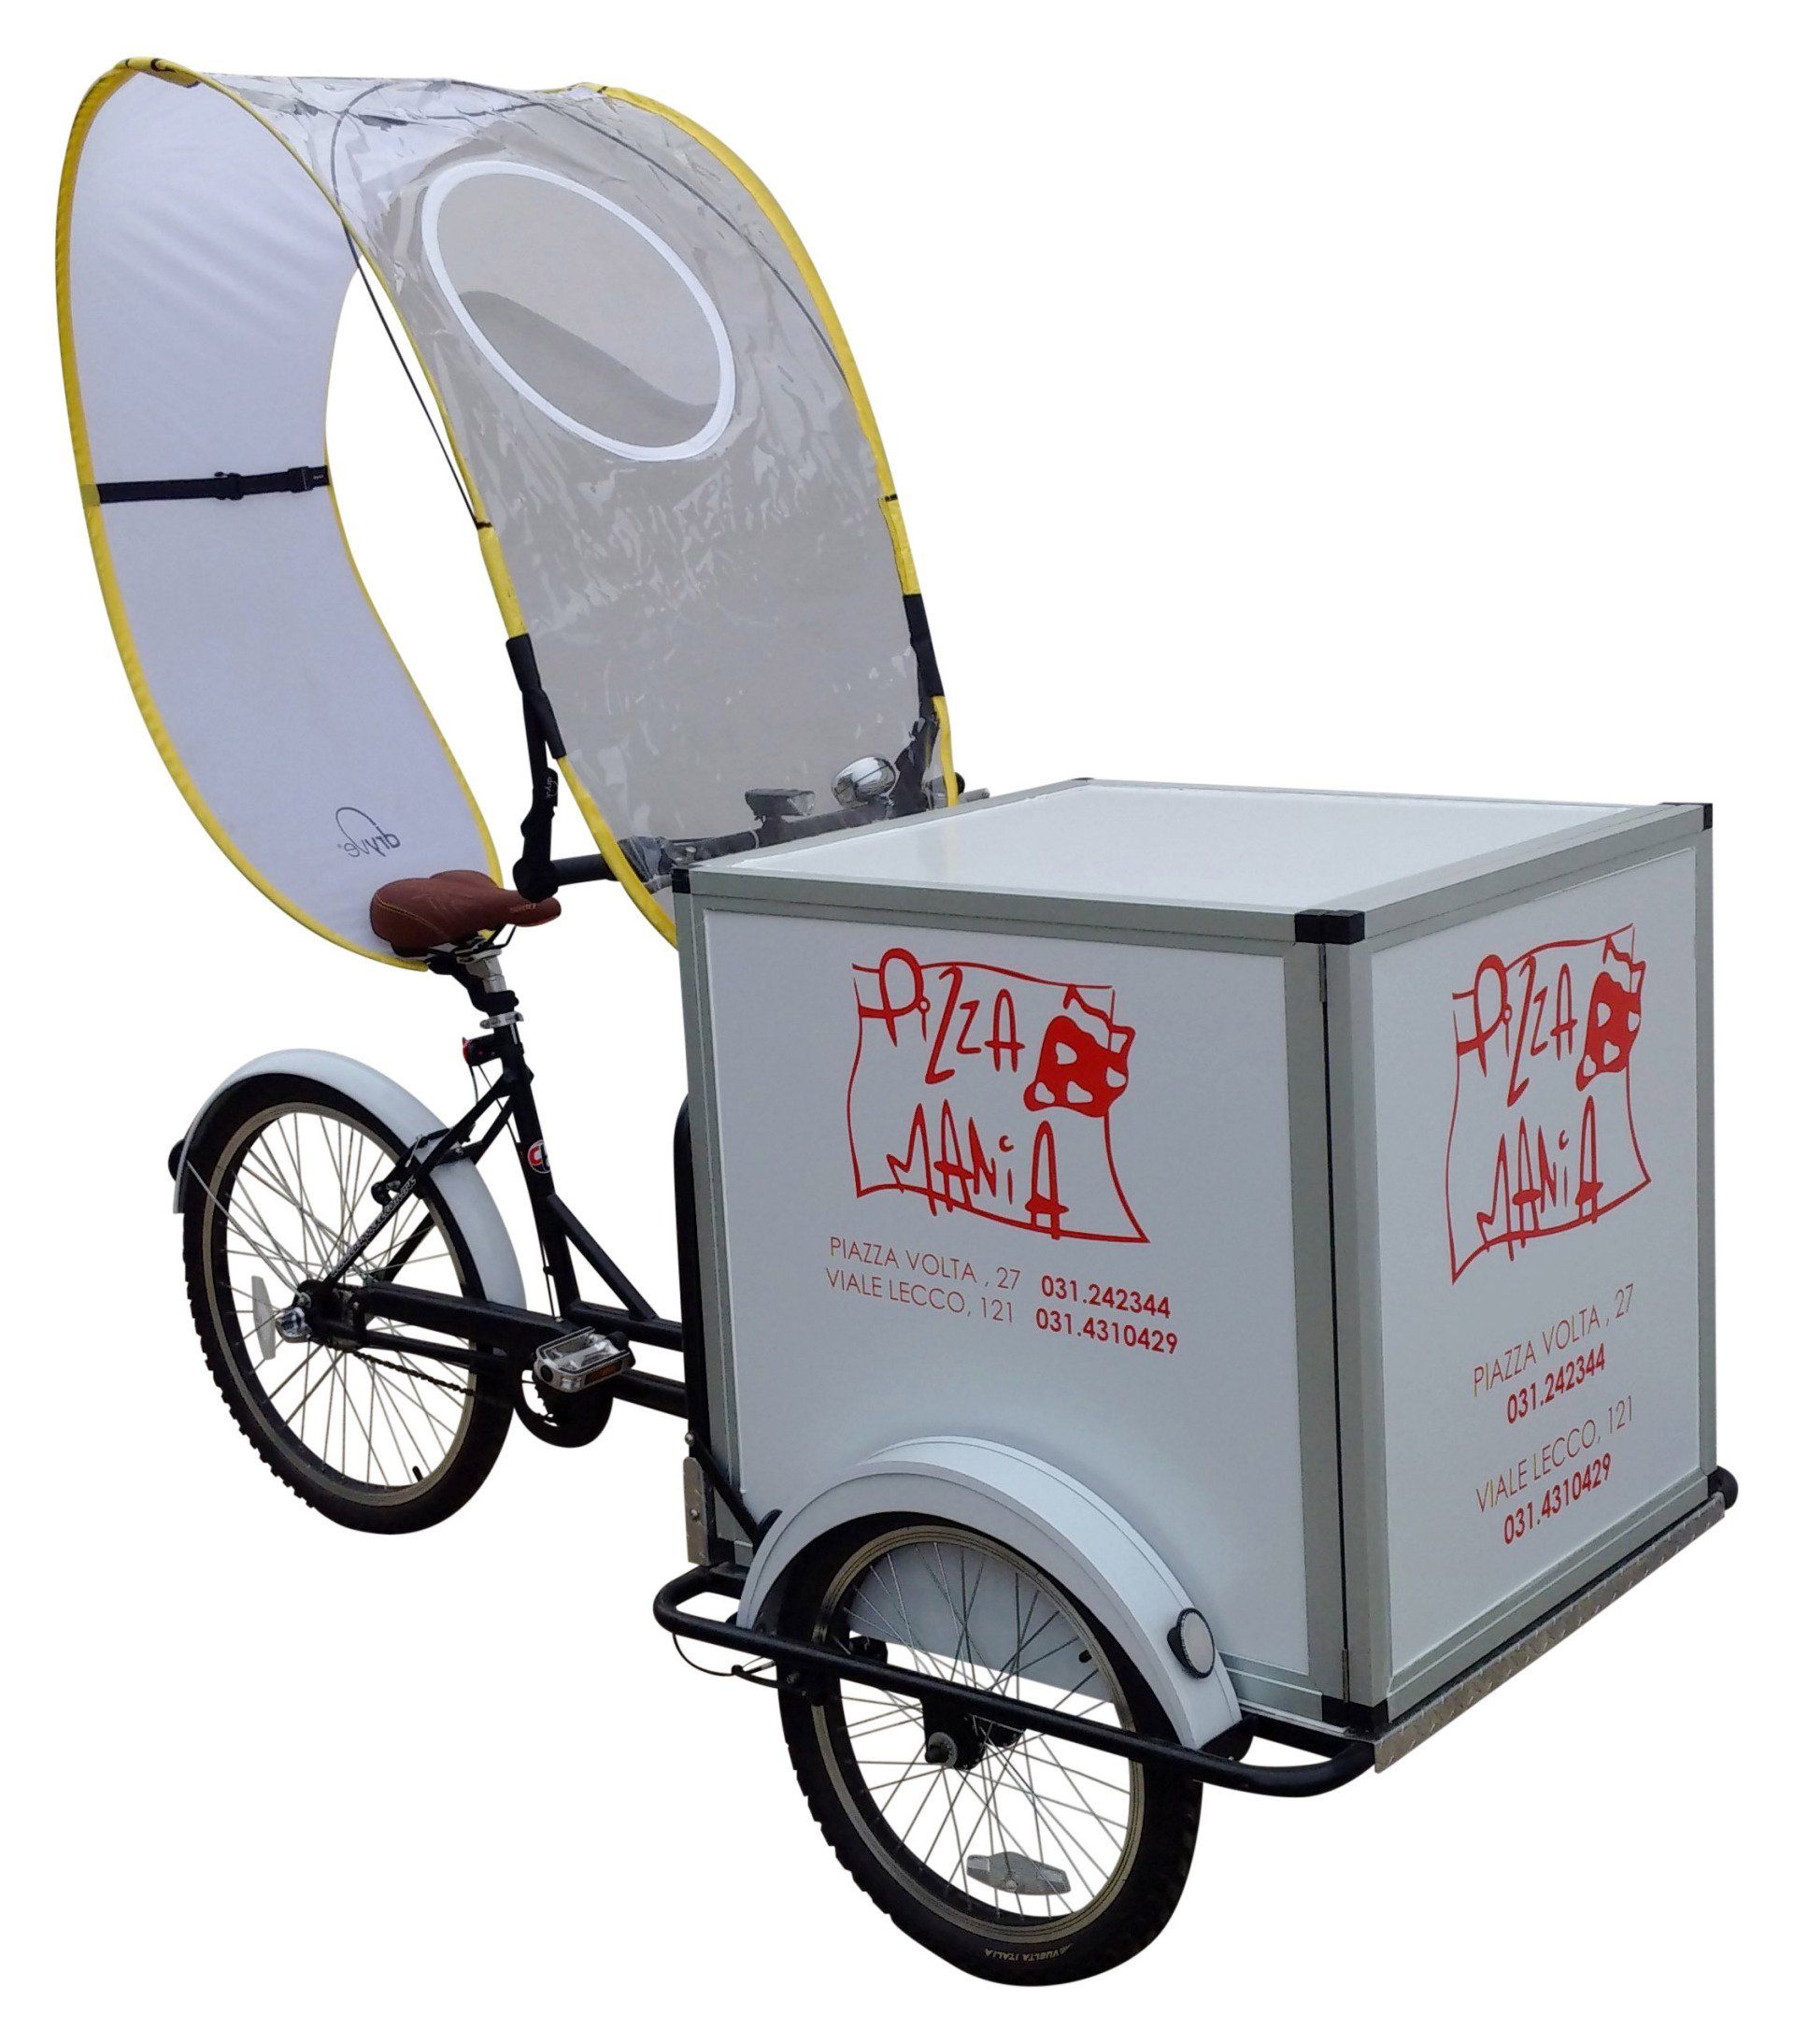 Triciclo Cargo bike pubblicitaria per consegne a domicilio pizza